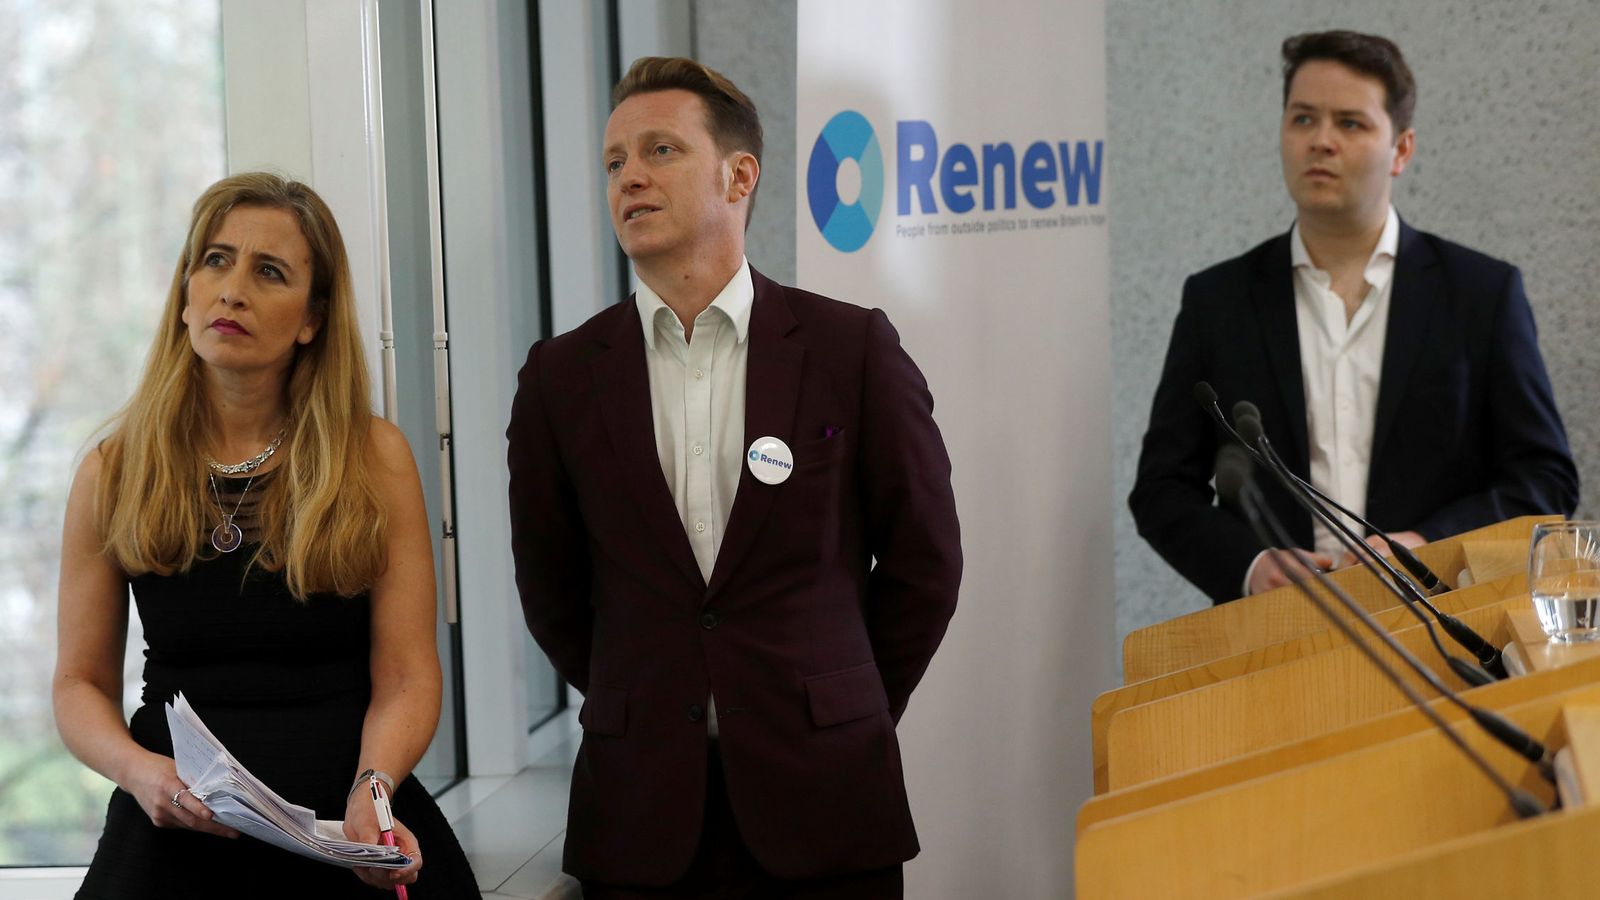 Foto: Sandra khadhouri, James Clarke y James Torrance, líderes de Renew, durante la presentación del partido en Londres. (Reuters)